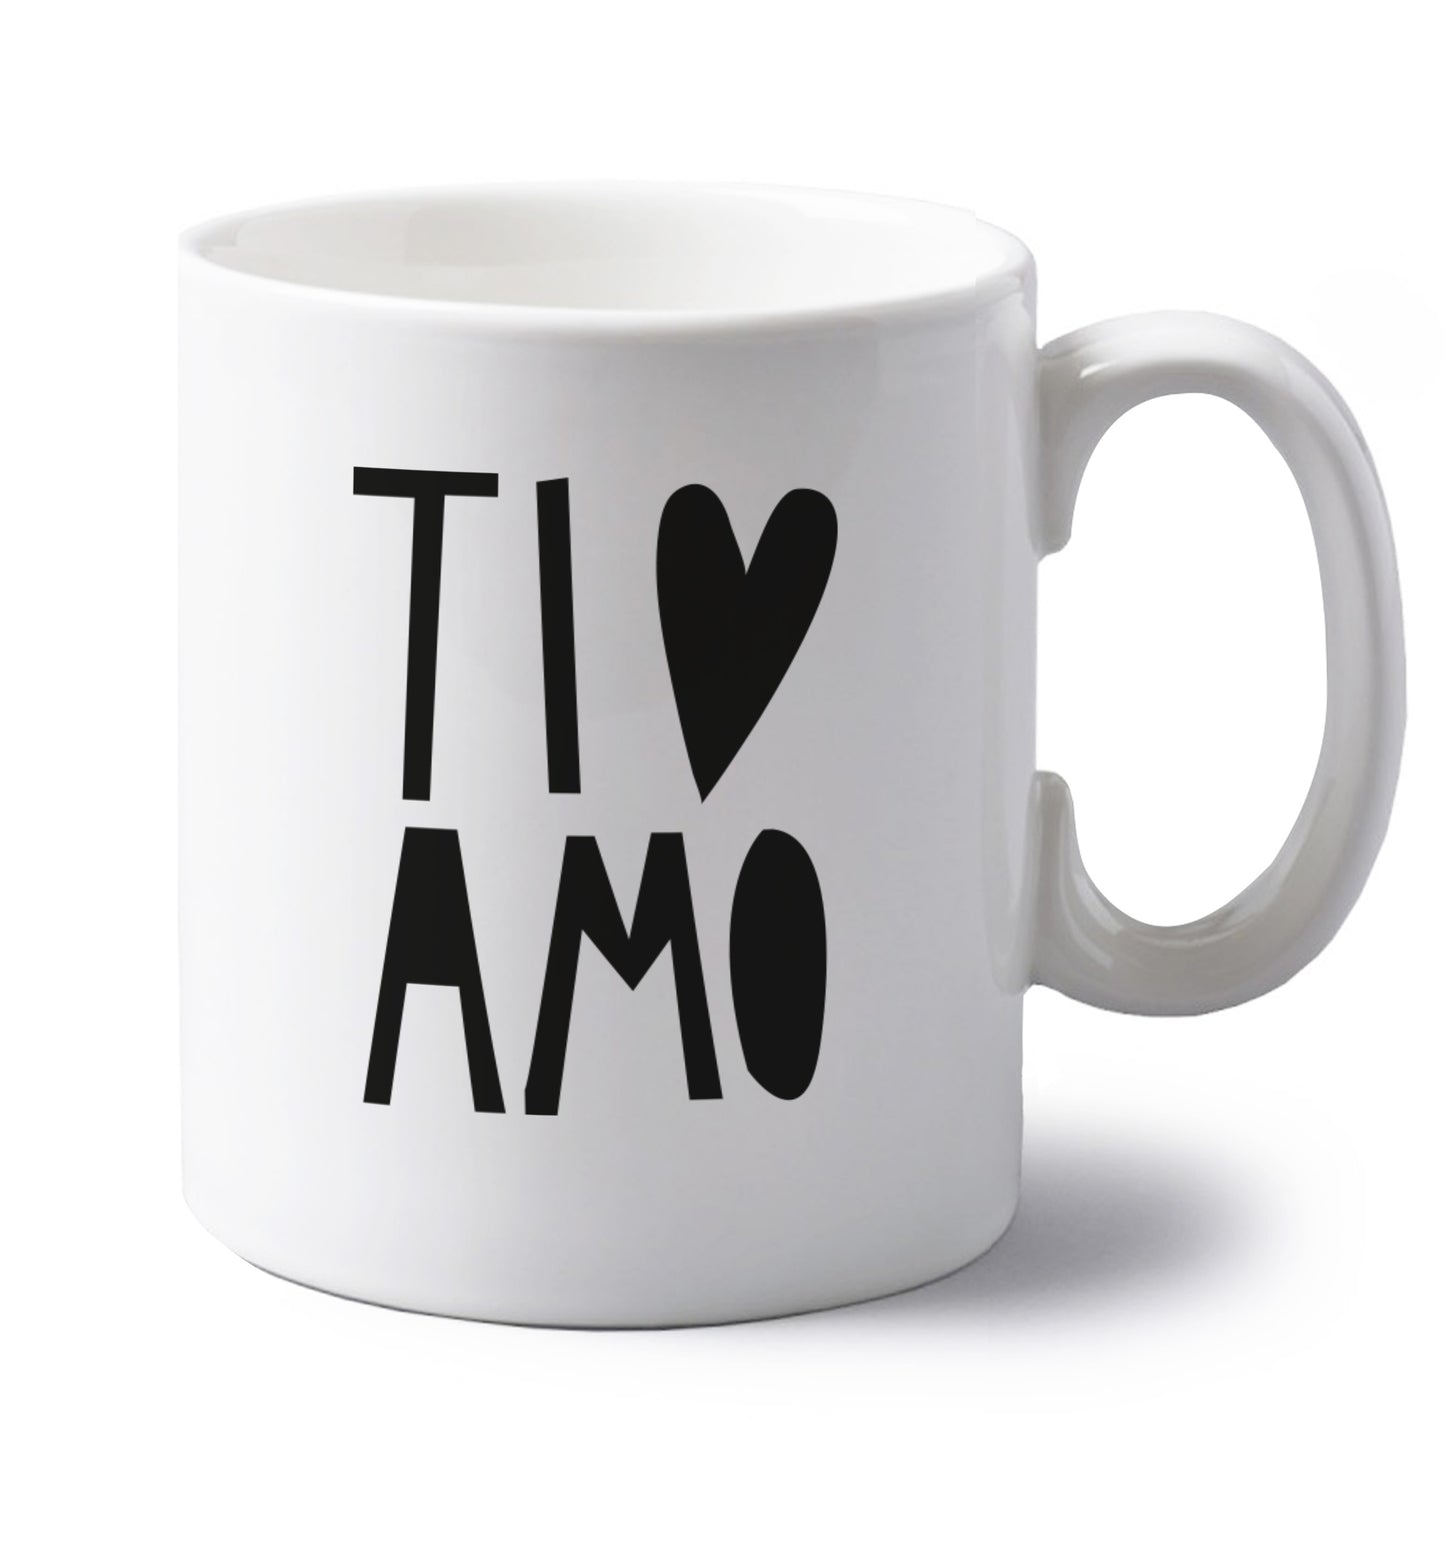 Ti amo - I love you left handed white ceramic mug 